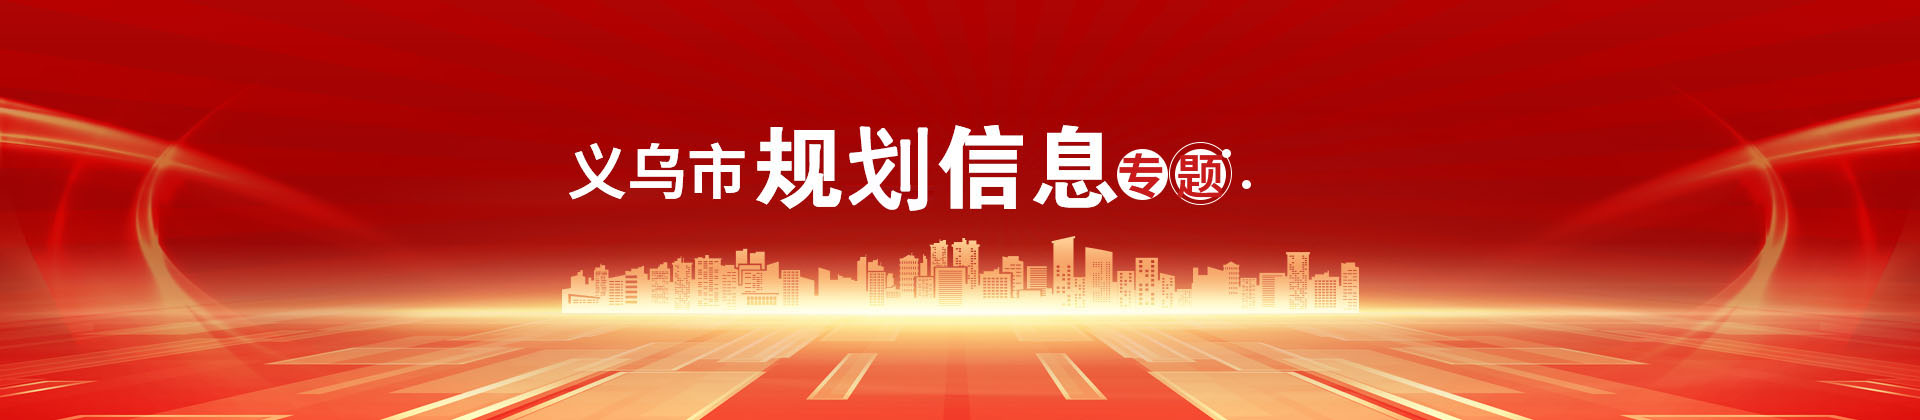 义乌市规划信息专栏头部banner图片